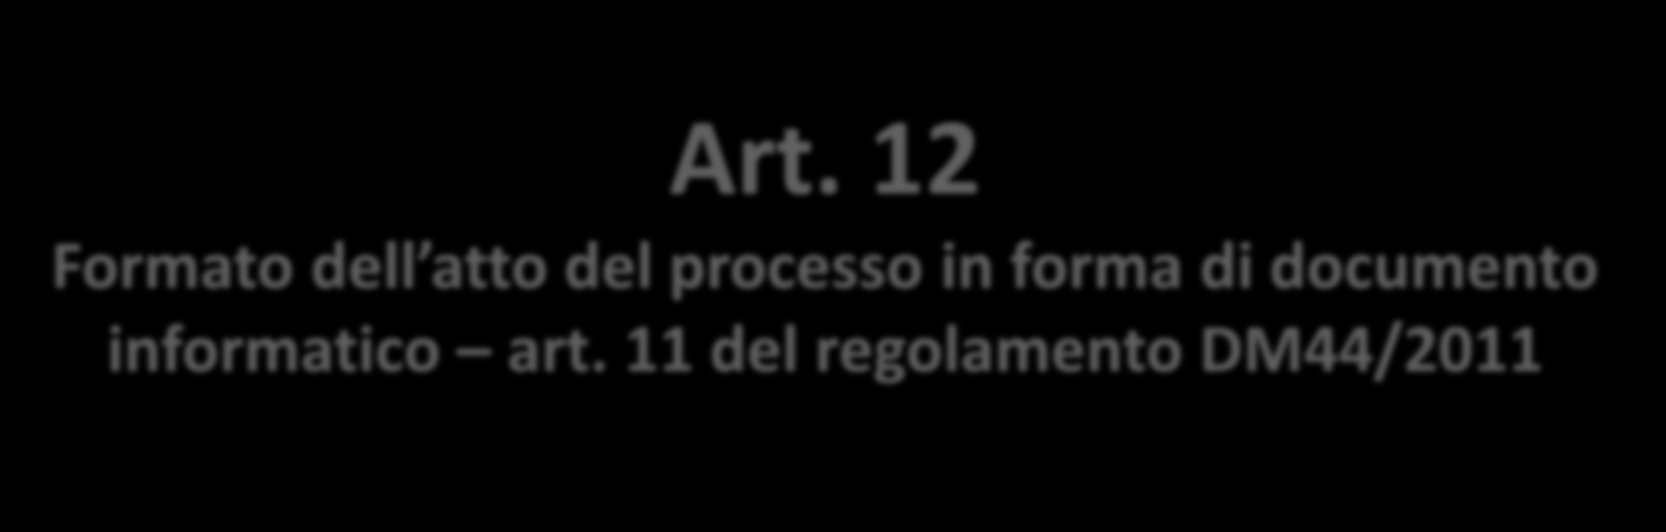 Art. 12 Formato dell atto del processo in forma di documento informatico art.